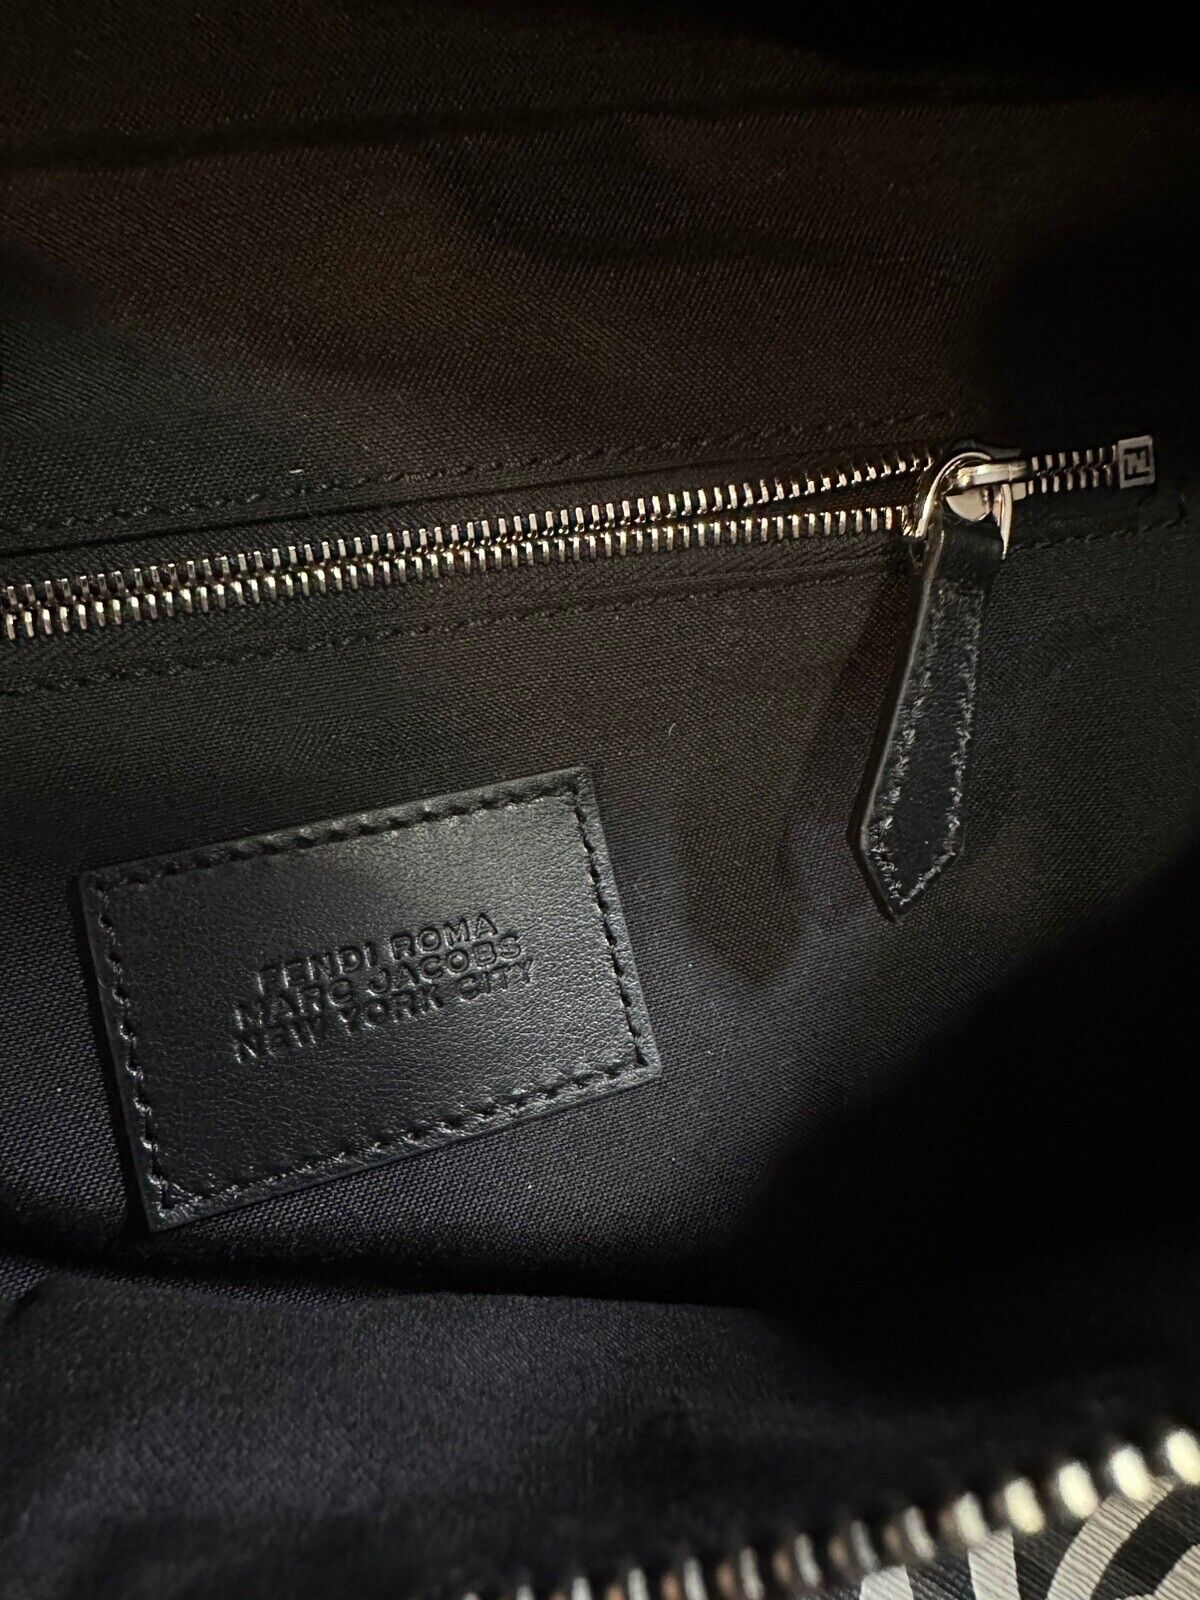 Новая поясная сумка Fendi из парусины/кожи, цвет черный/серый, один размер, 7VA562, цена 1350 долларов.